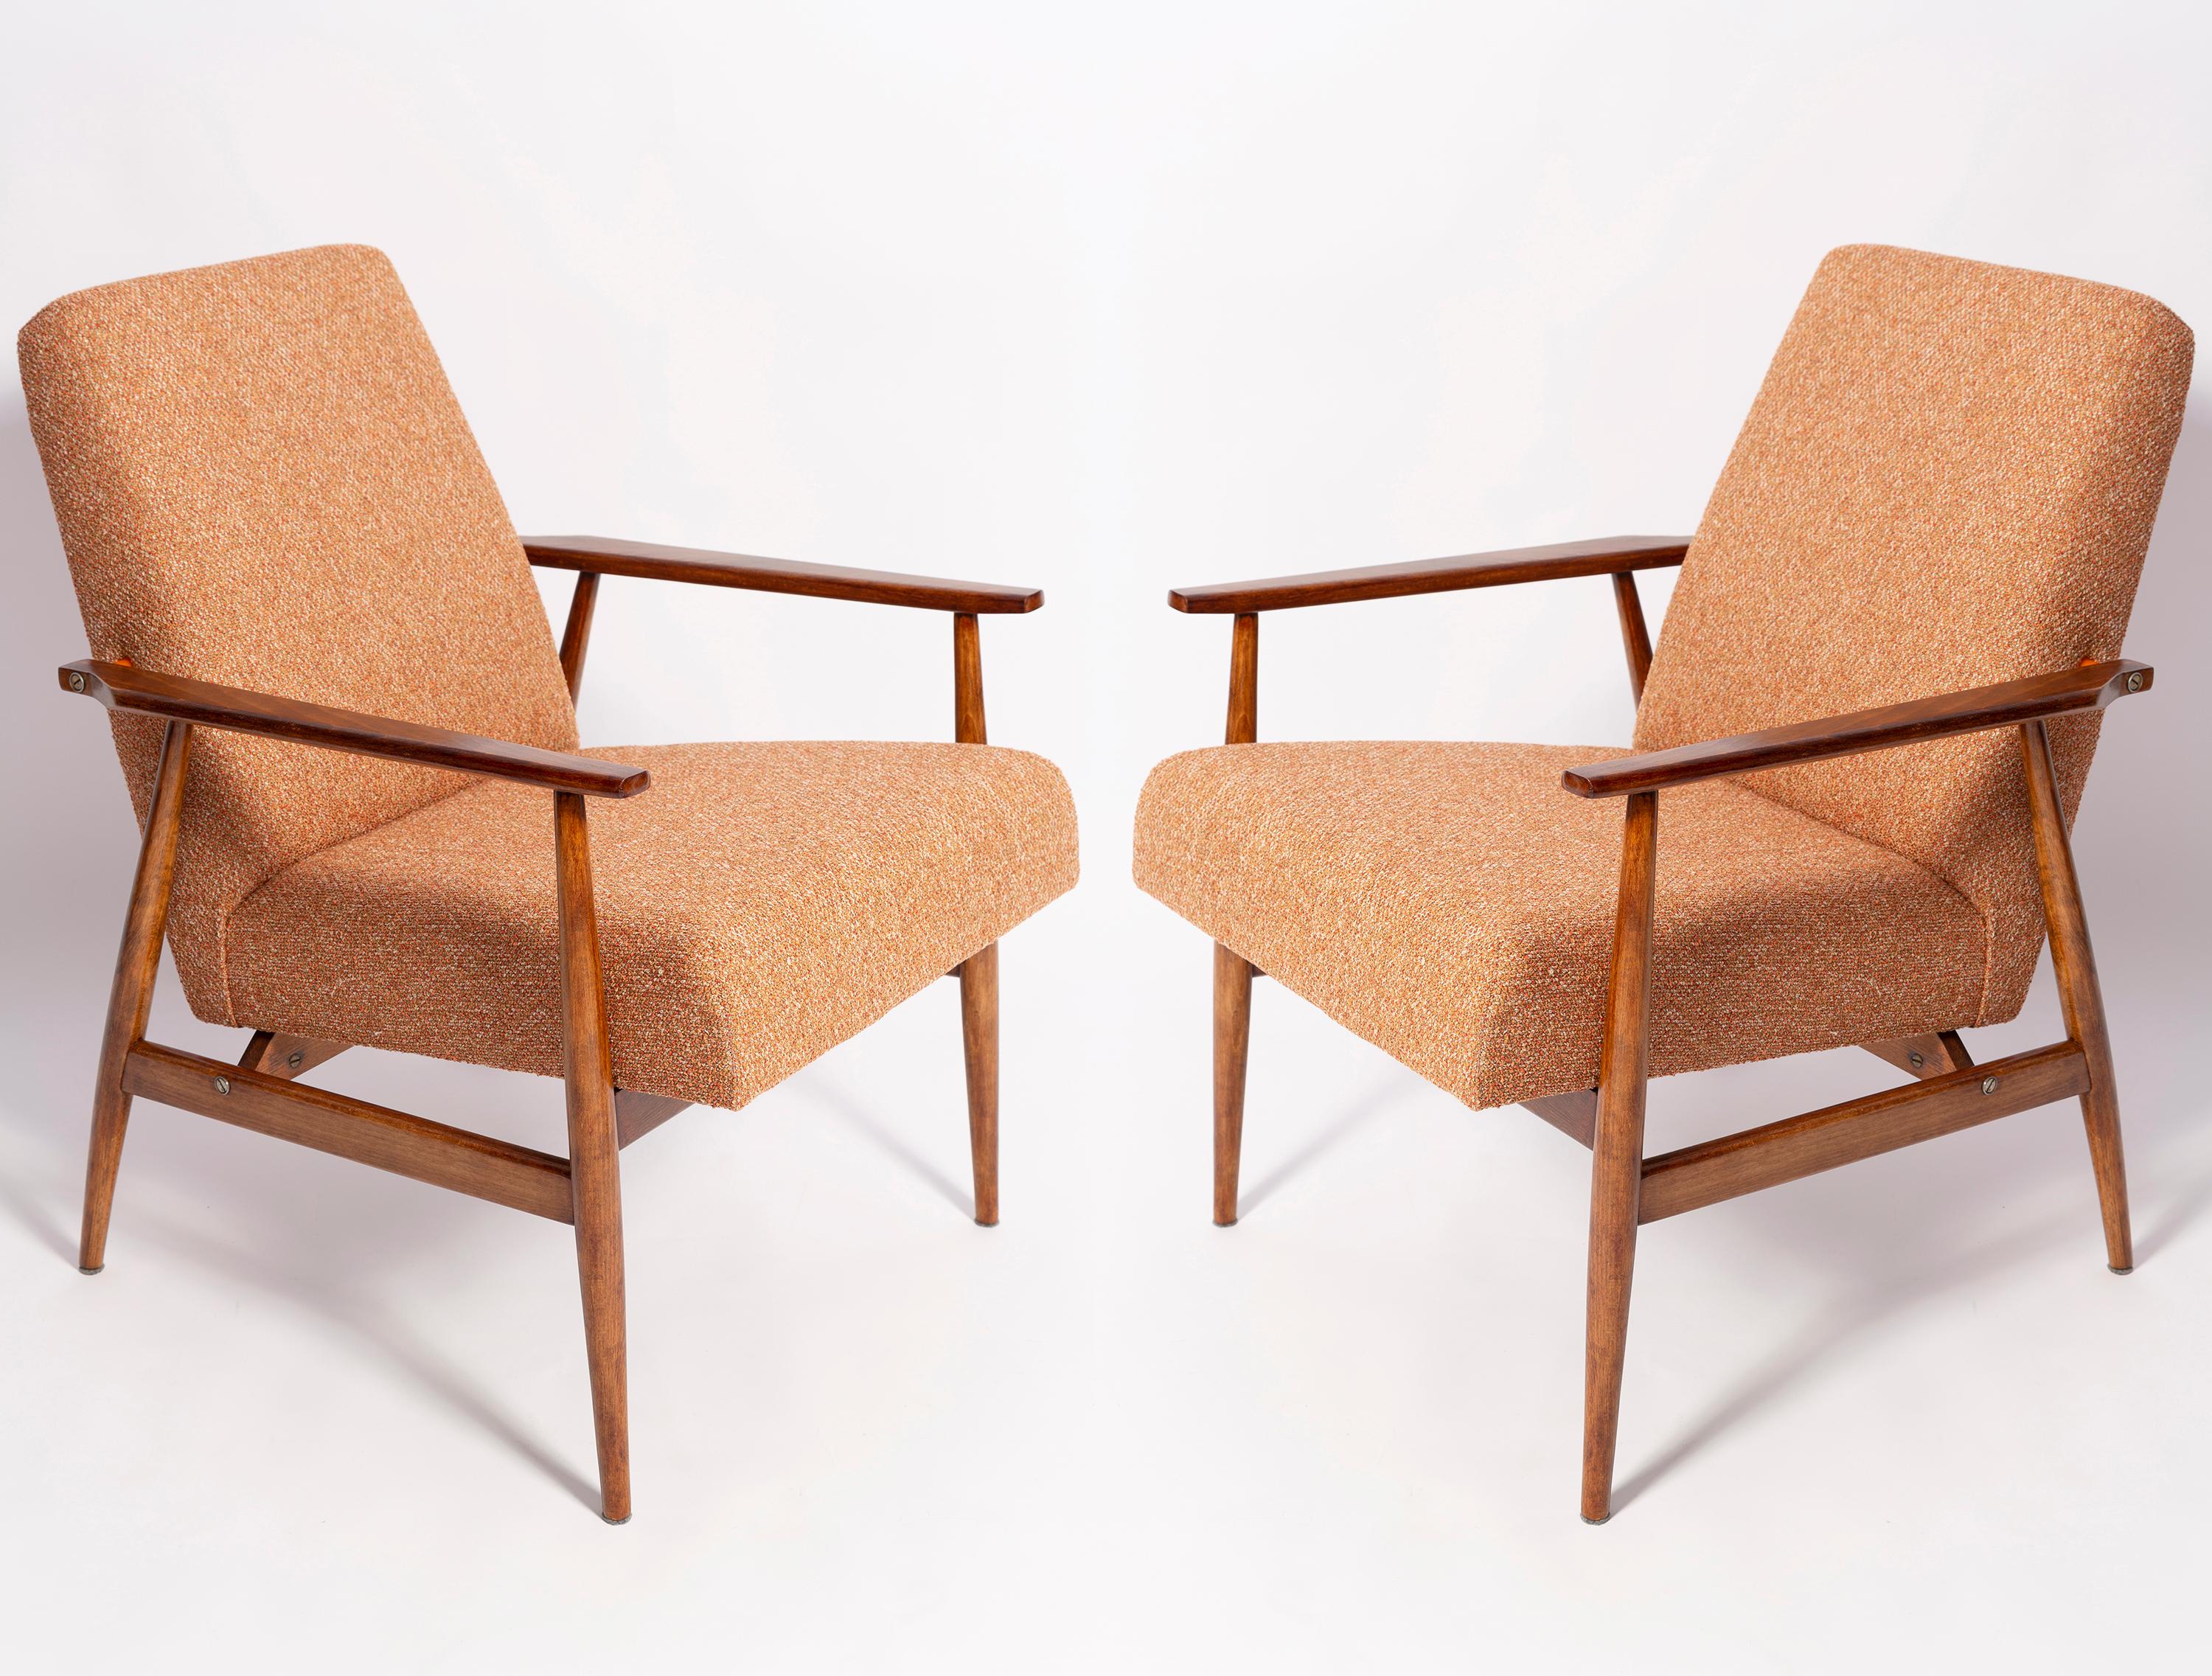 Ein schöner, restaurierter Sessel von Henryk Lis. Möbel nach kompletter Renovierung durch Schreiner und Polsterei. Der Stoff, mit dem Rückenlehne und Sitzfläche bezogen sind, ist ein hochwertiges italienisches Melange-Polster in der Farbe Orange.